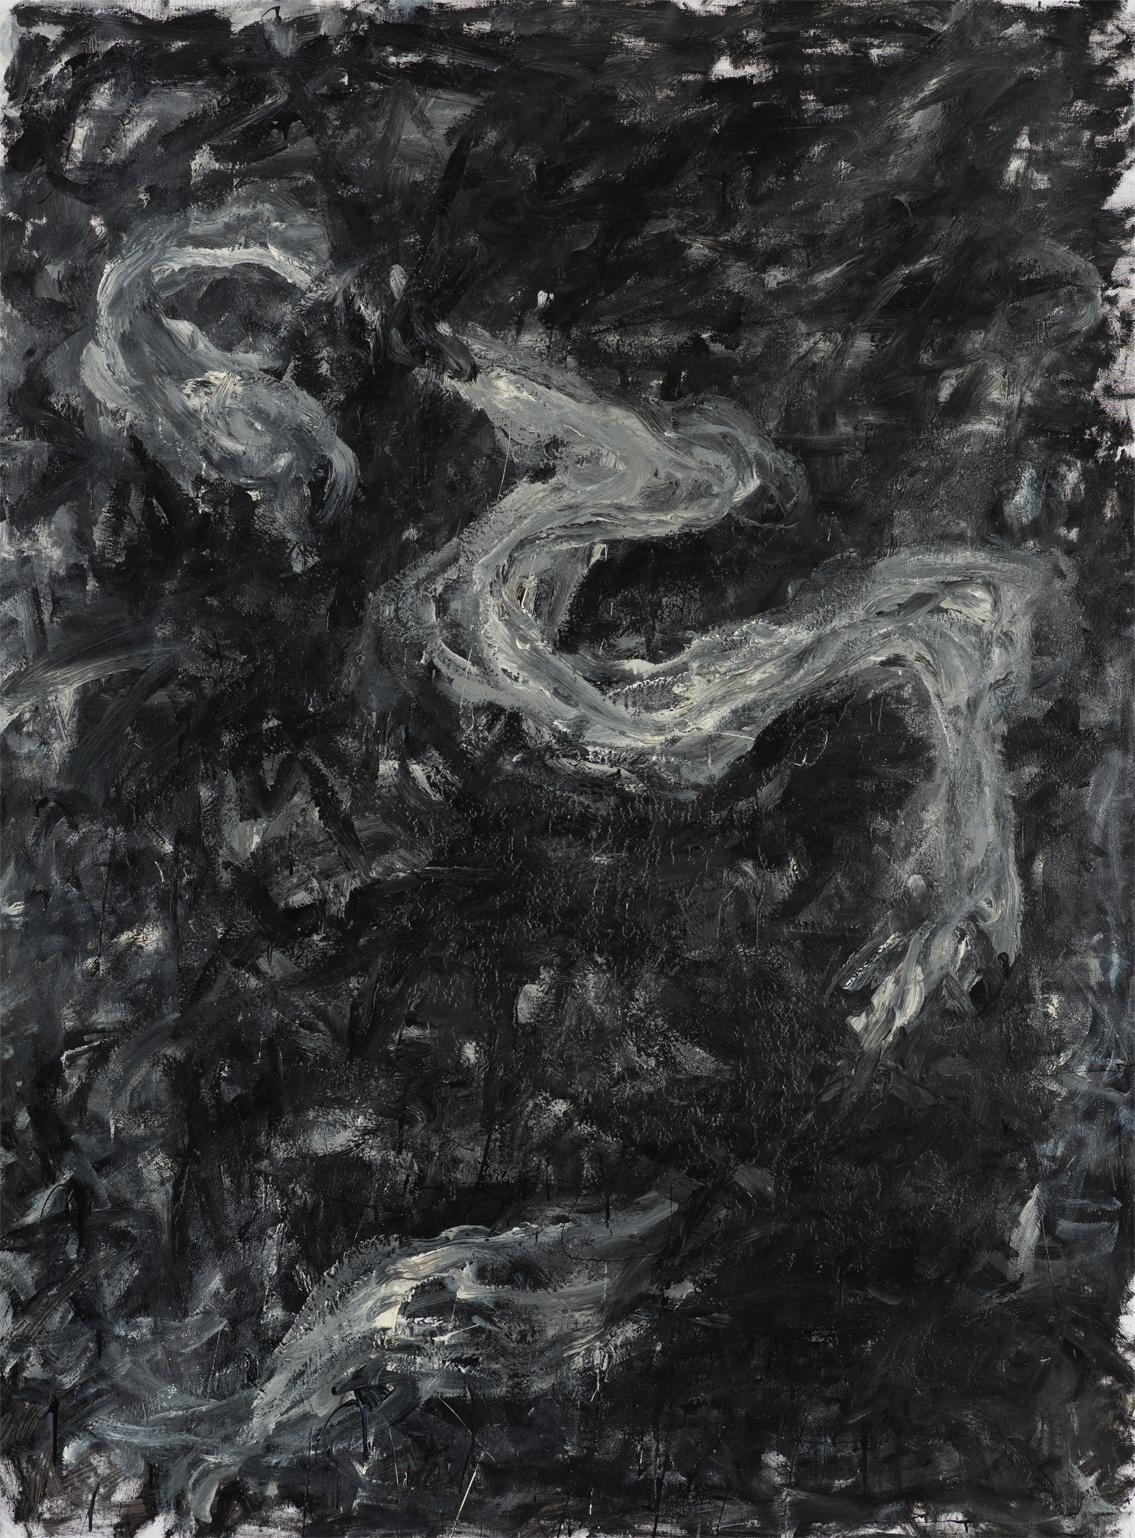 Abstract Painting Zsolt Berszán - Sans titre 05 [Remains of the Remains 05] - Contemporain, abstrait, noir, gris